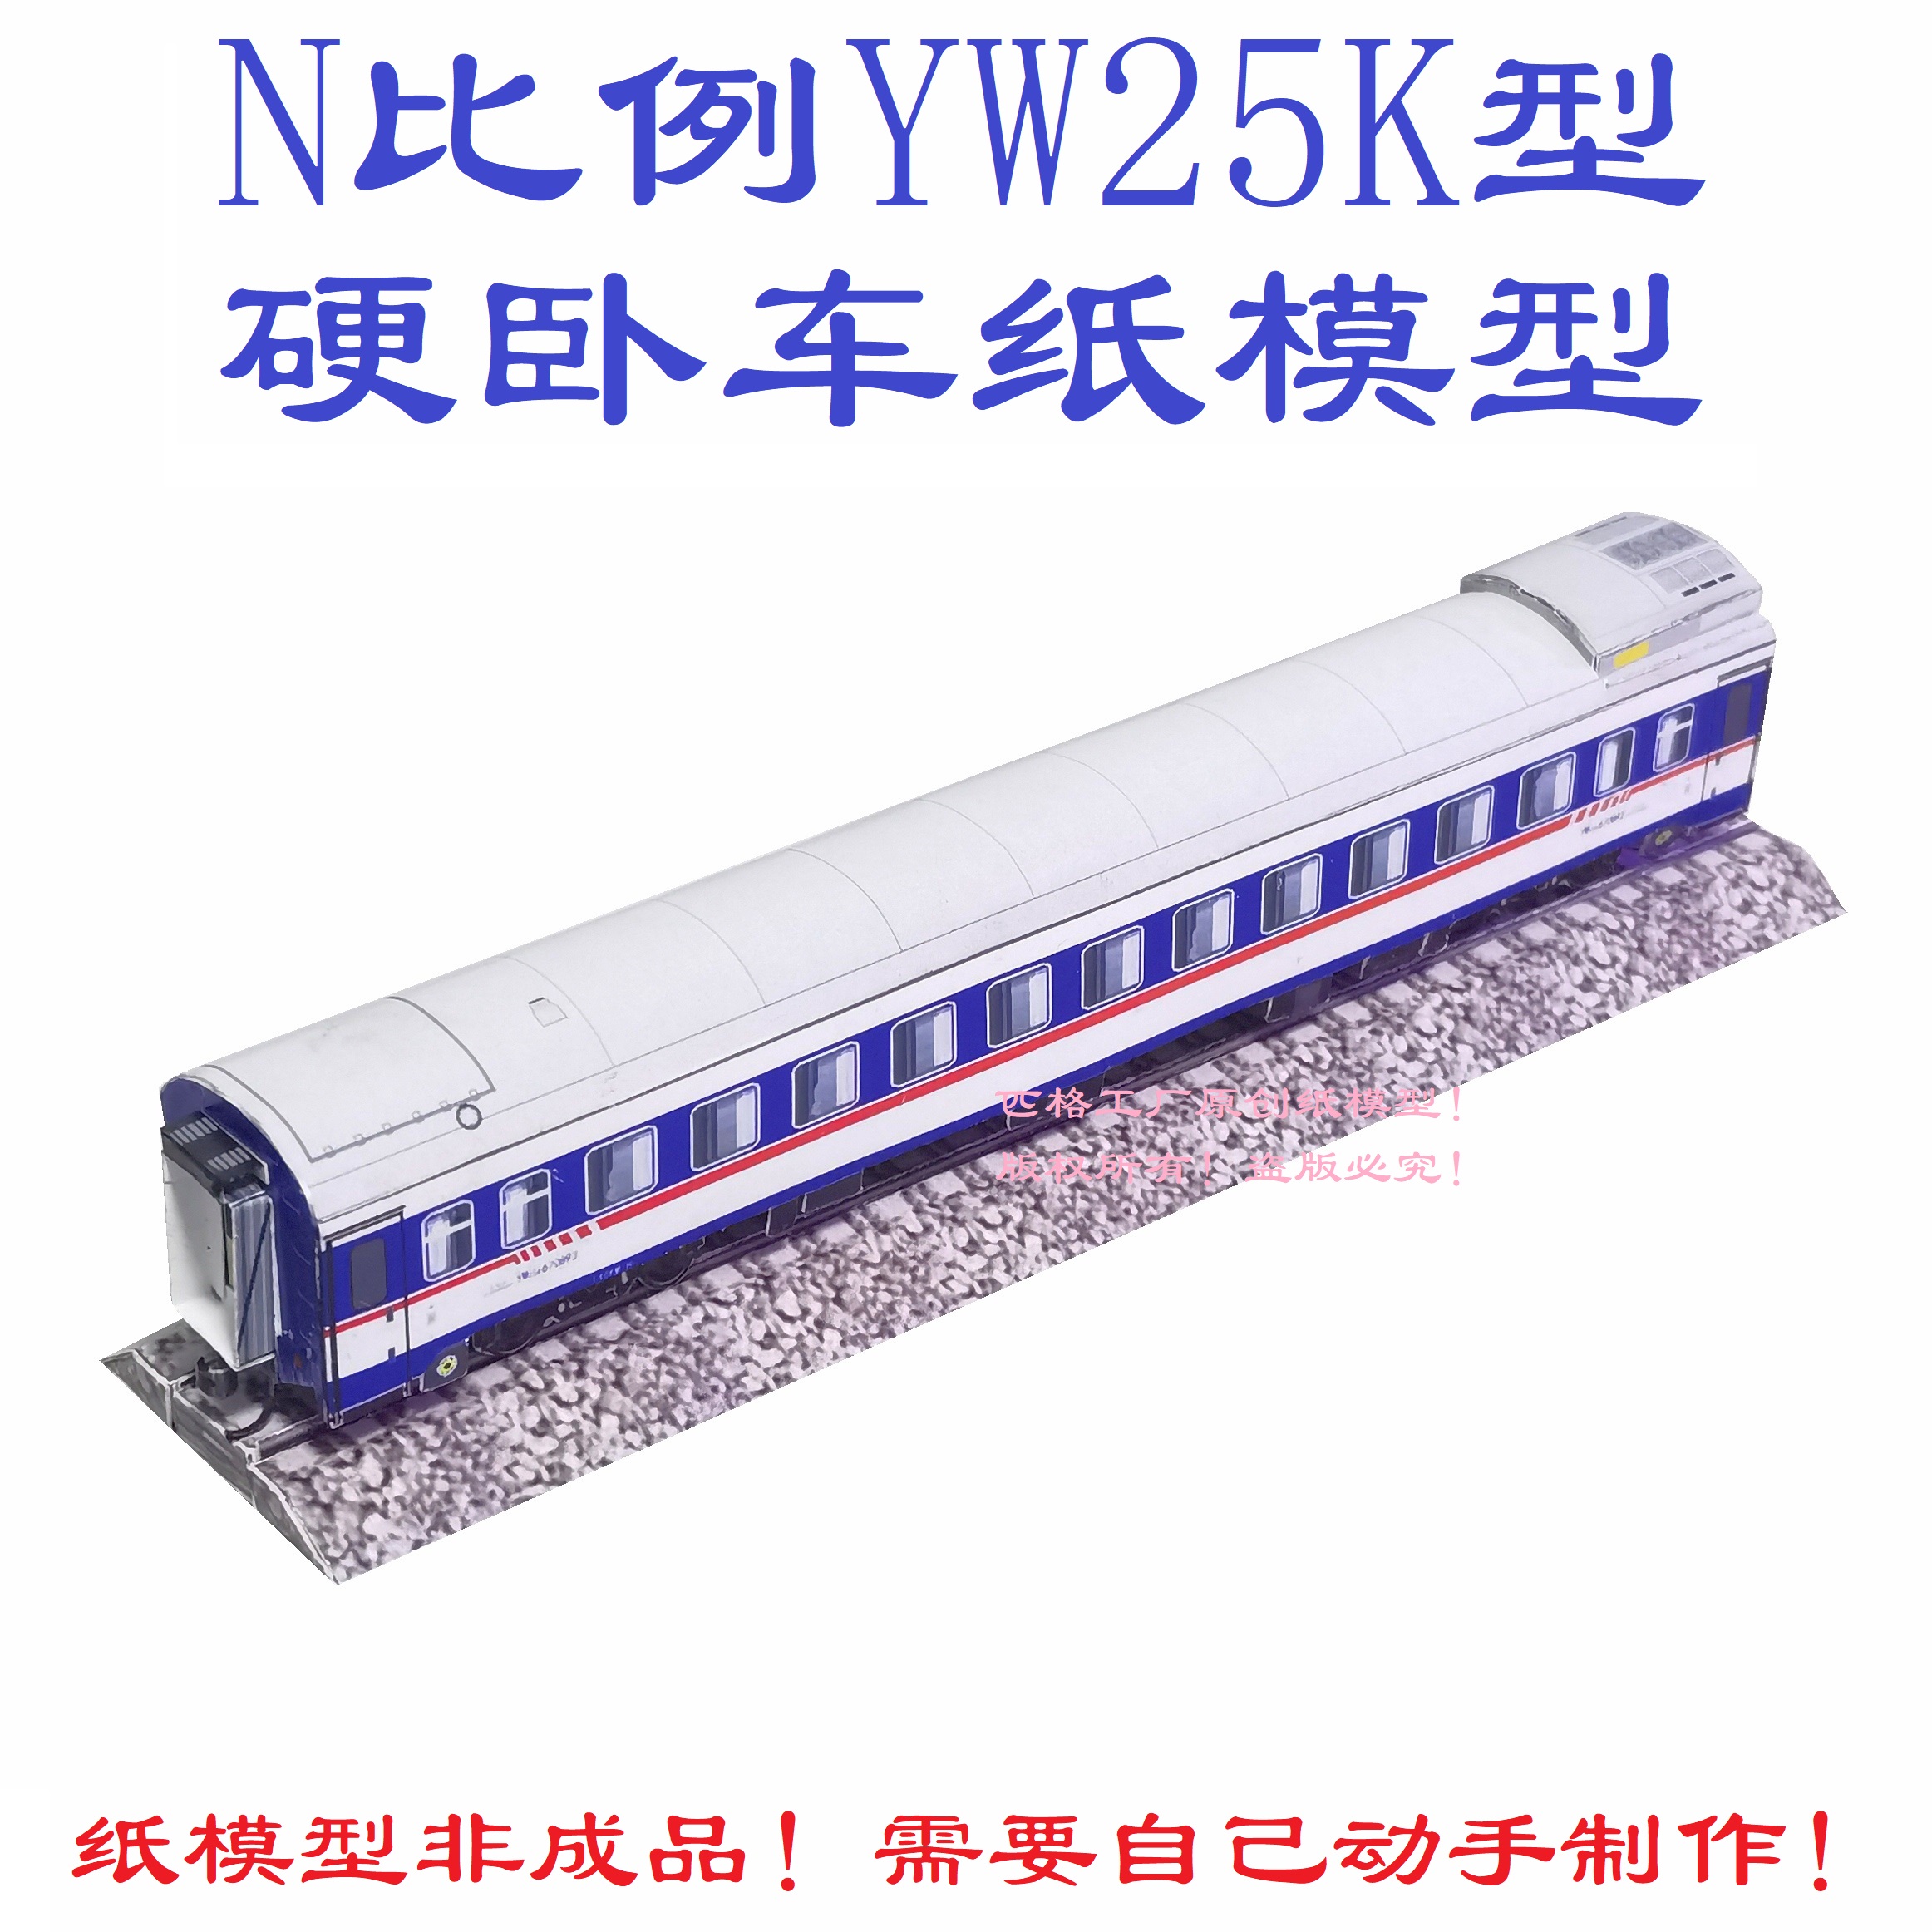 匹格工厂N比例YW25K硬卧车模型3D纸模型DIY手工铁路高铁火车模型 玩具/童车/益智/积木/模型 火车模型 原图主图